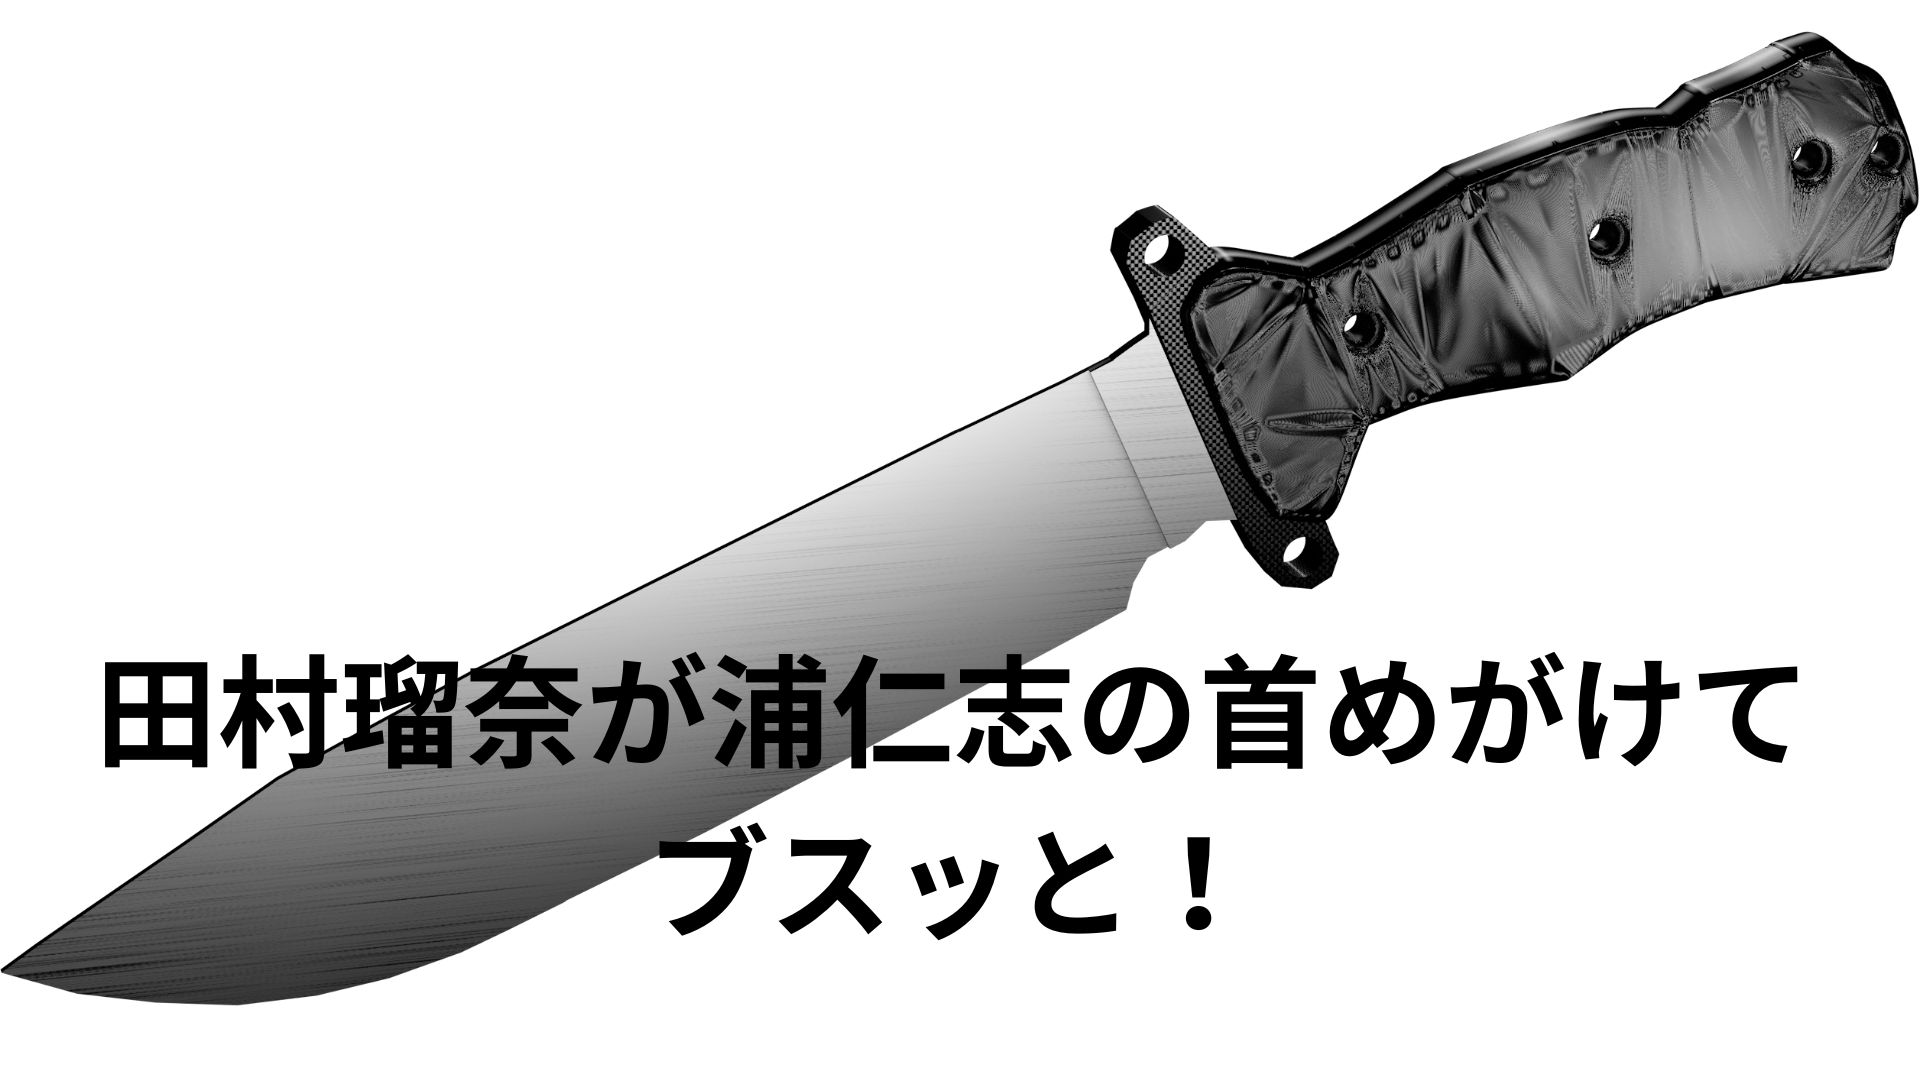 【すすきの頭部切断】田村瑠奈は普段からナイフを持ち歩いていたとの新たな証言。普通親が娘をラブホに送っていく？